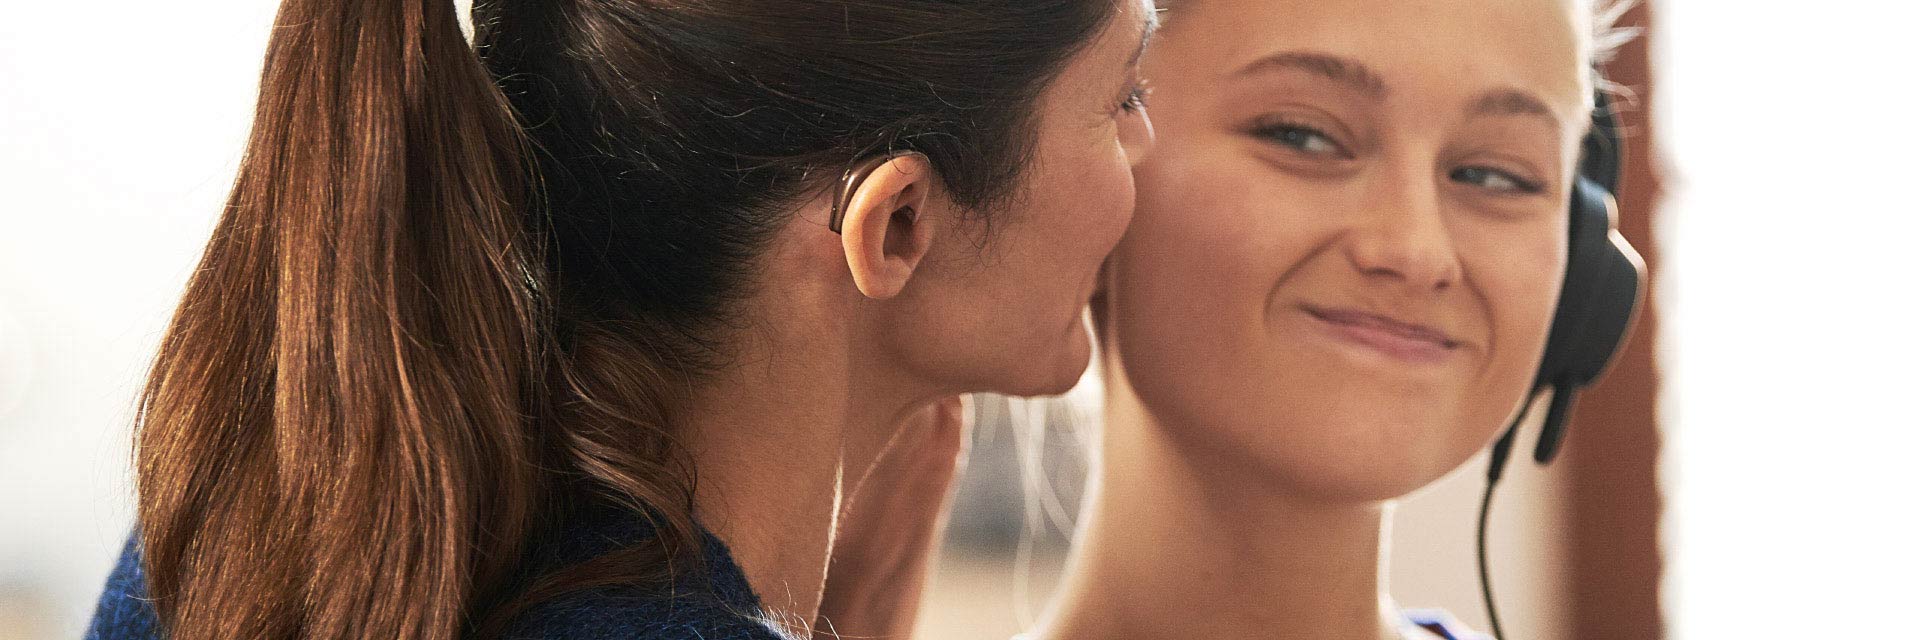 L’image montre une femme avec un appareil auditif dans son oreille et une fille qui échangent un sourire